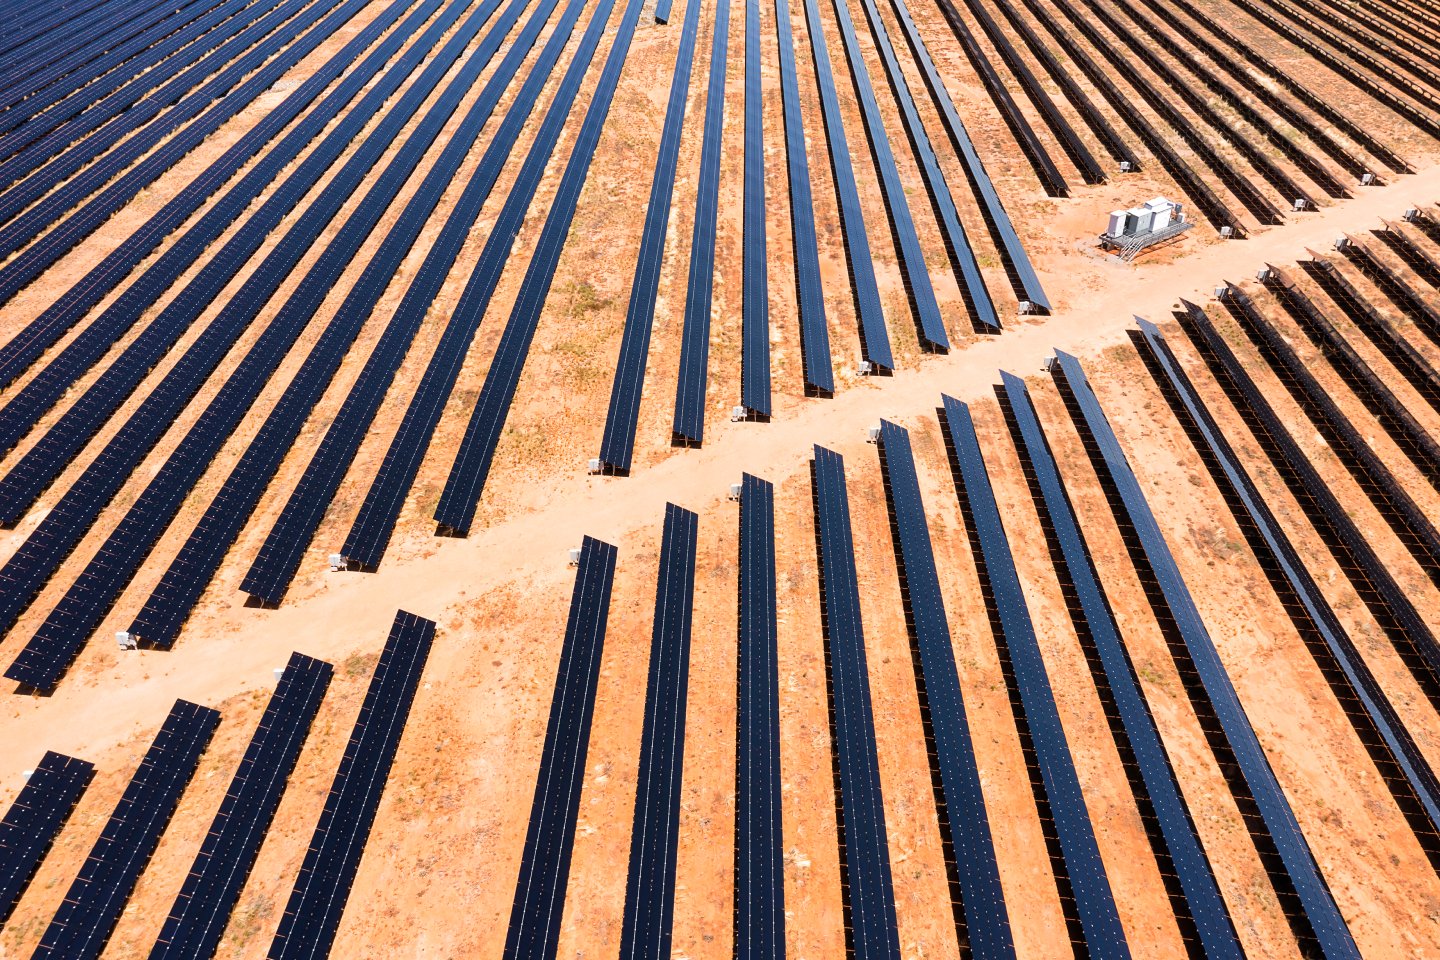 Solar panels providing renewable energy in Broken Hill, rural Australia